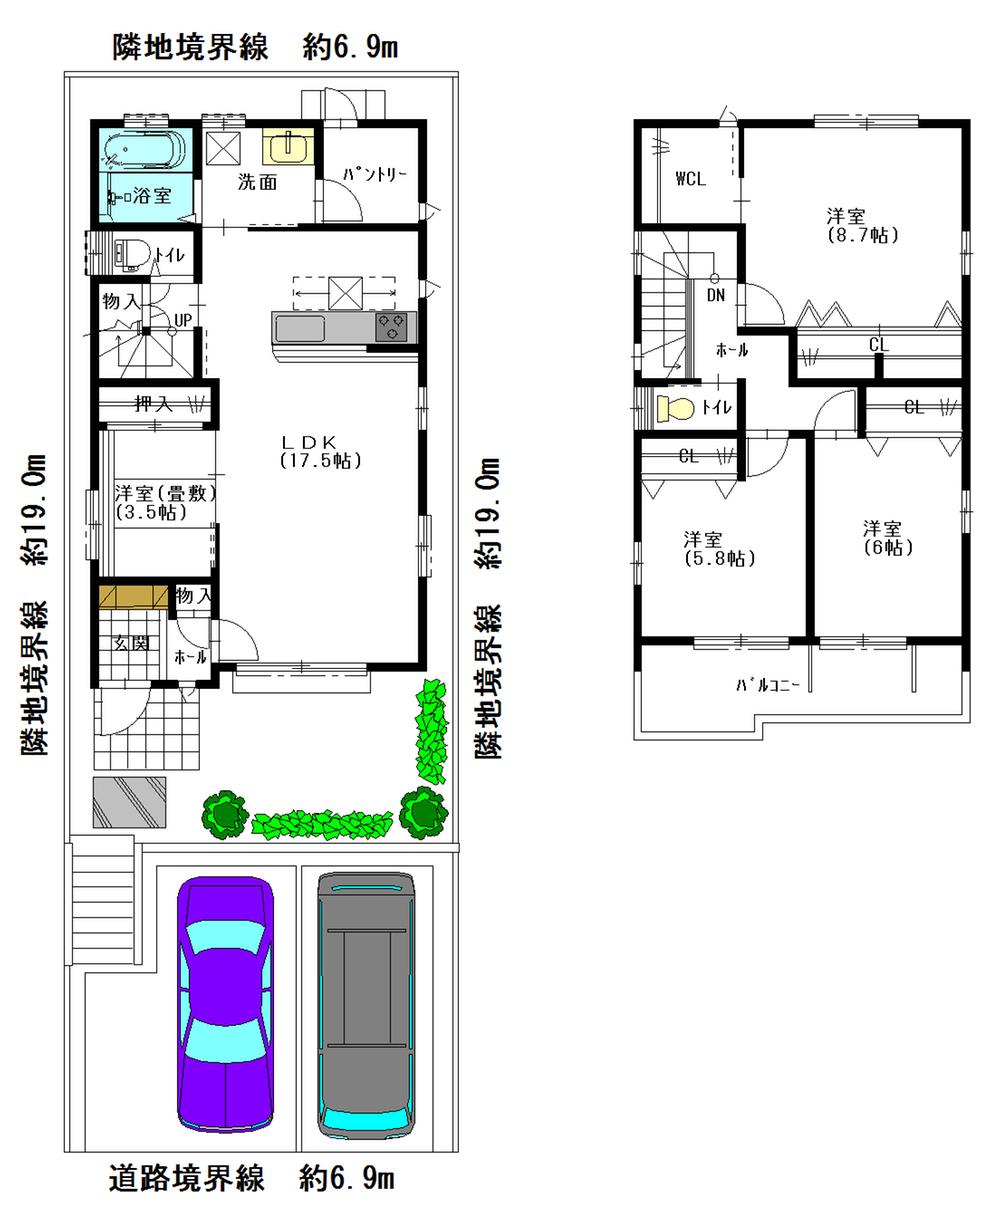 Floor plan. 38,800,000 yen, 4LDK, Land area 132.24 sq m , Building area 106 sq m floor plan